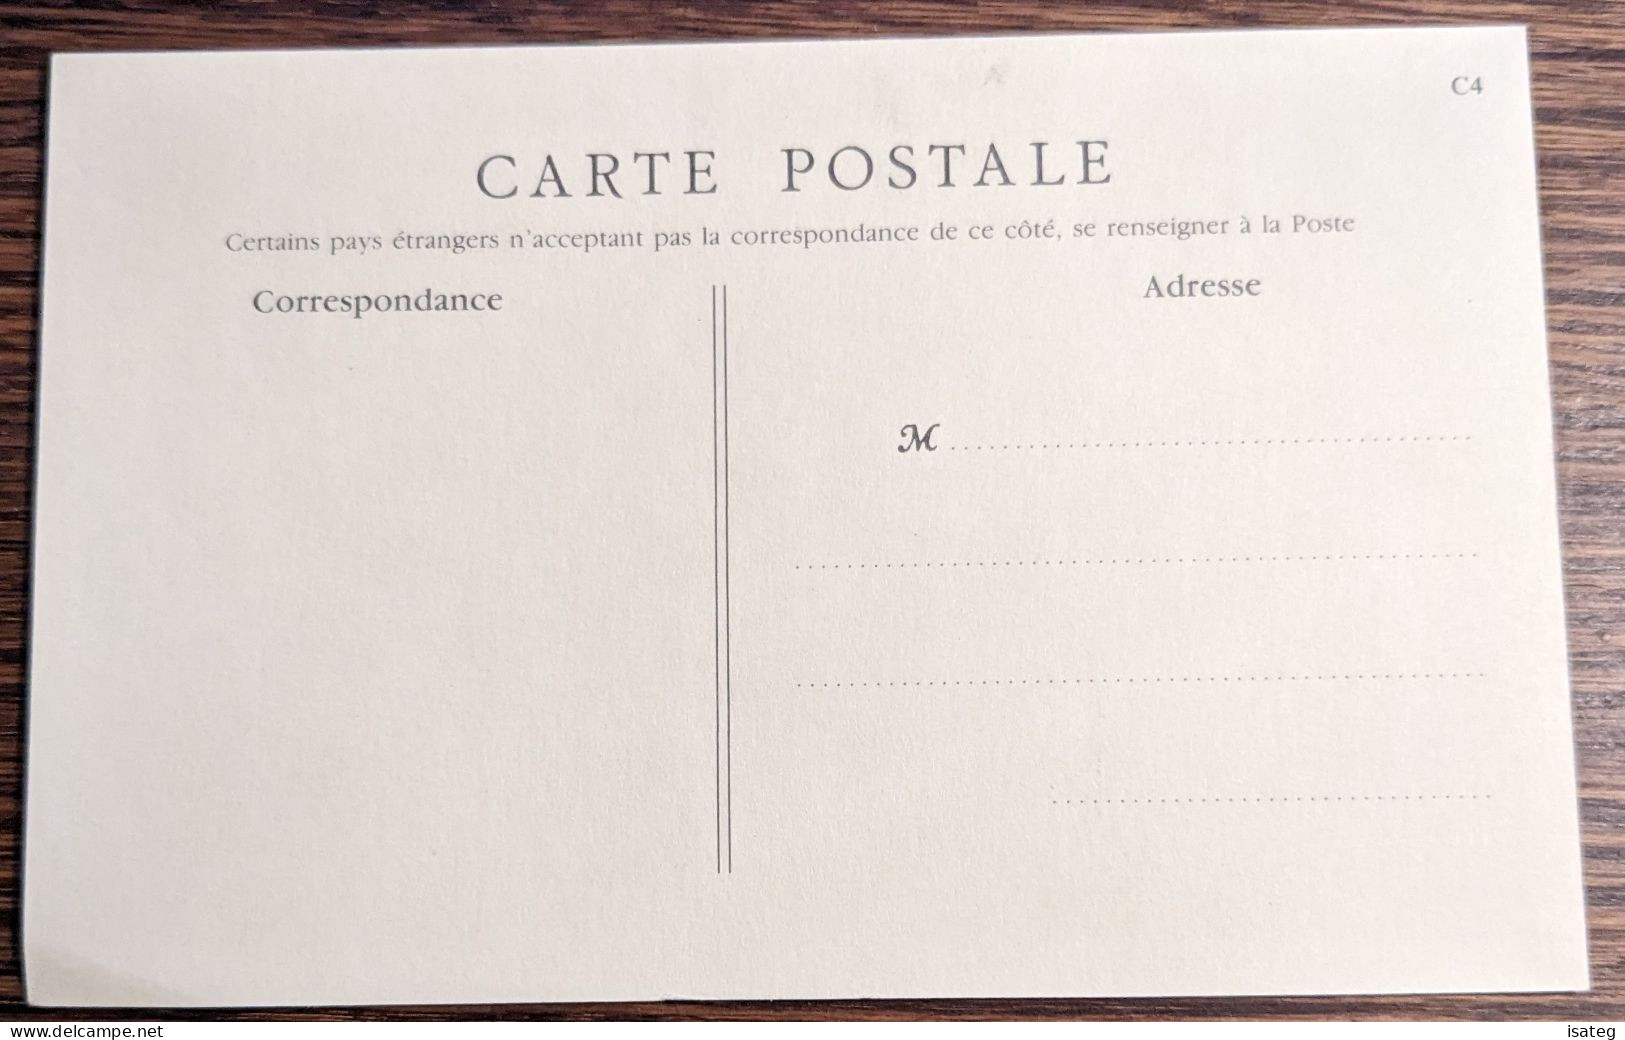 Carte Postale Ancienne Colorisée : Souvenir Du Manège Enfantin - Limoges Fils Directeur - Unclassified